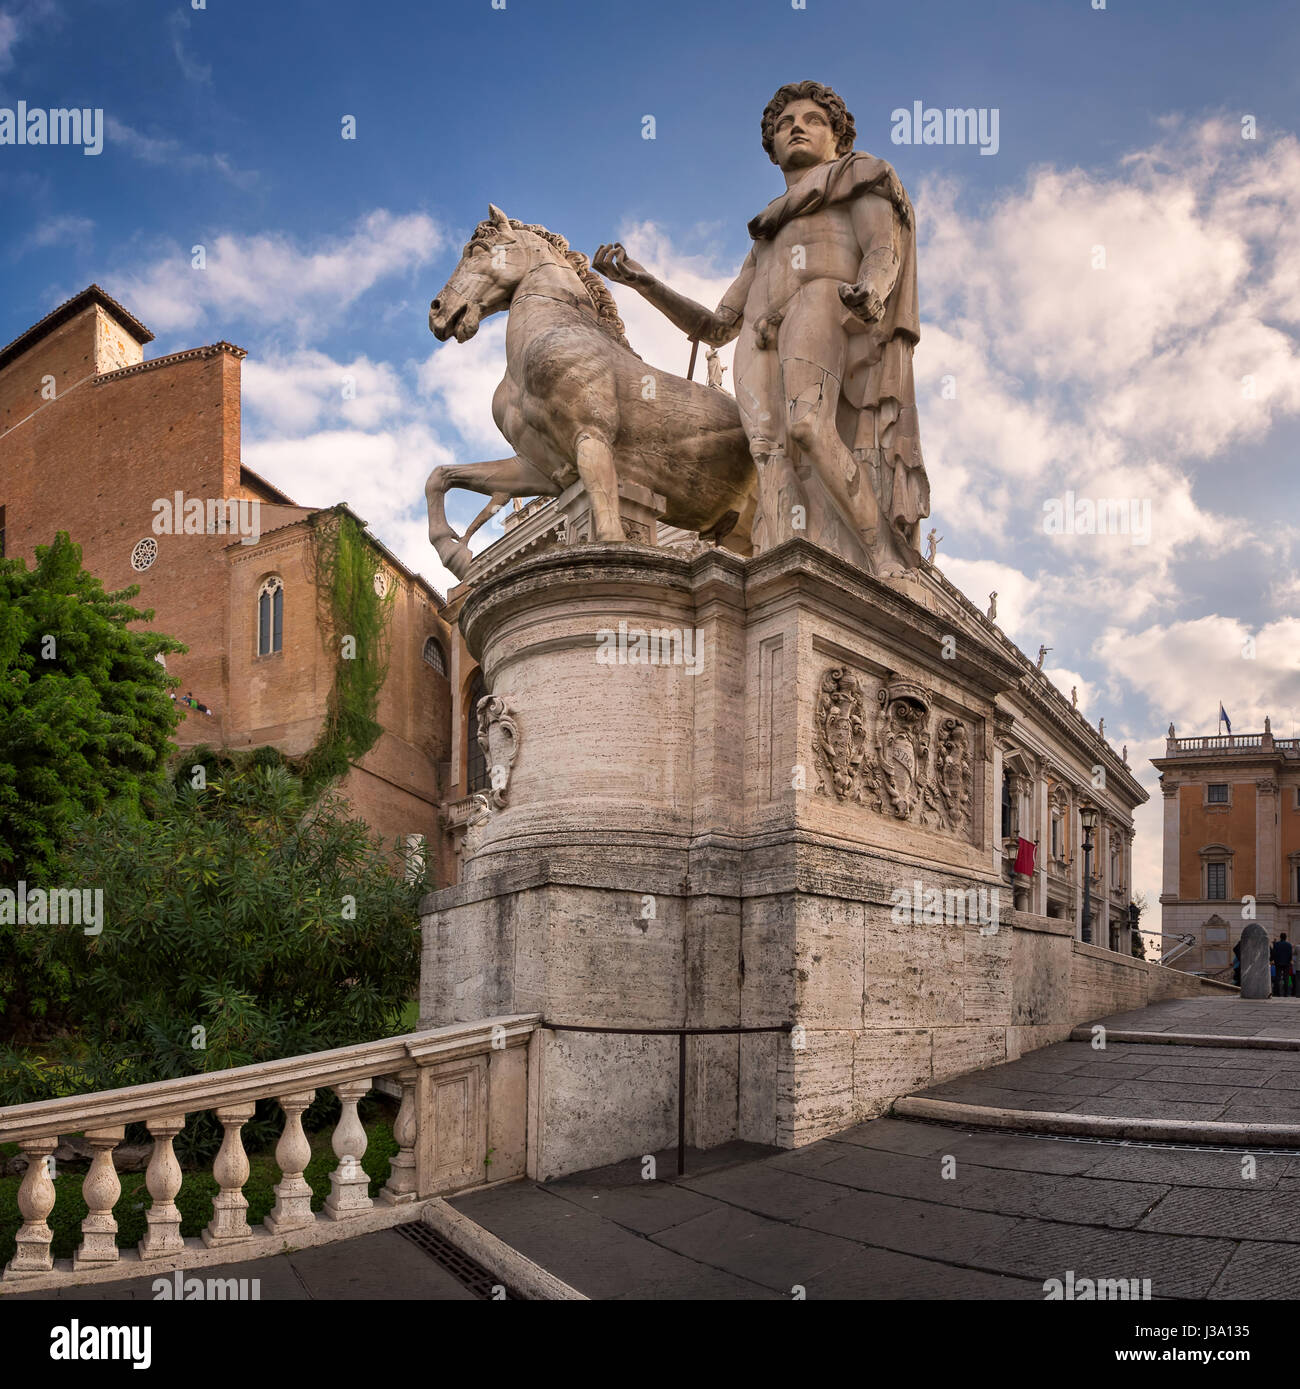 Statue von Castor an der Cordonata-Treppe an der Piazza del Campidoglio Platz am Kapitol, Rom, Italien Stockfoto